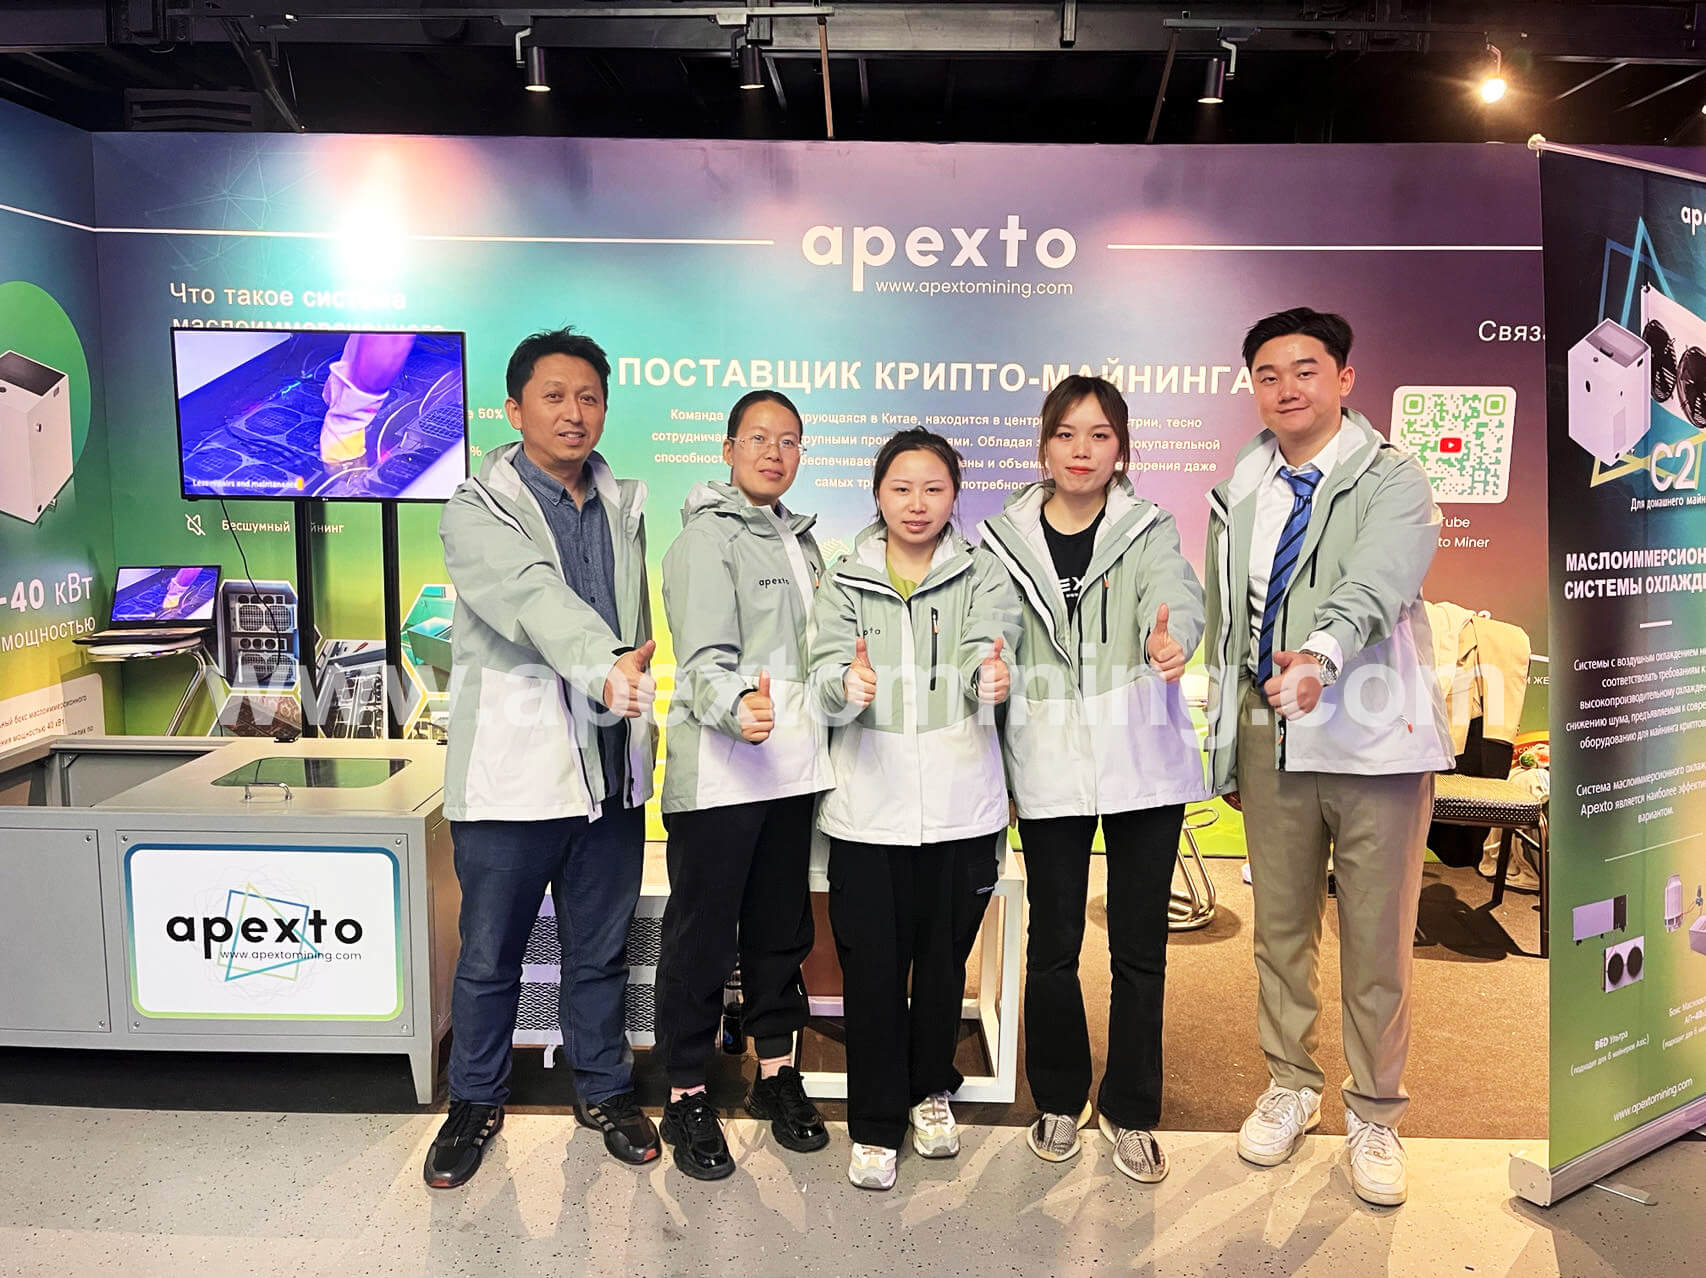 APEXTO ग्राहकांना उच्च-गुणवत्तेच्या आणि वैयक्तिकृत सेवा प्रदान करण्यासाठी क्रिप्टोकरन्सी प्रदर्शनांमध्ये सहभागी होते